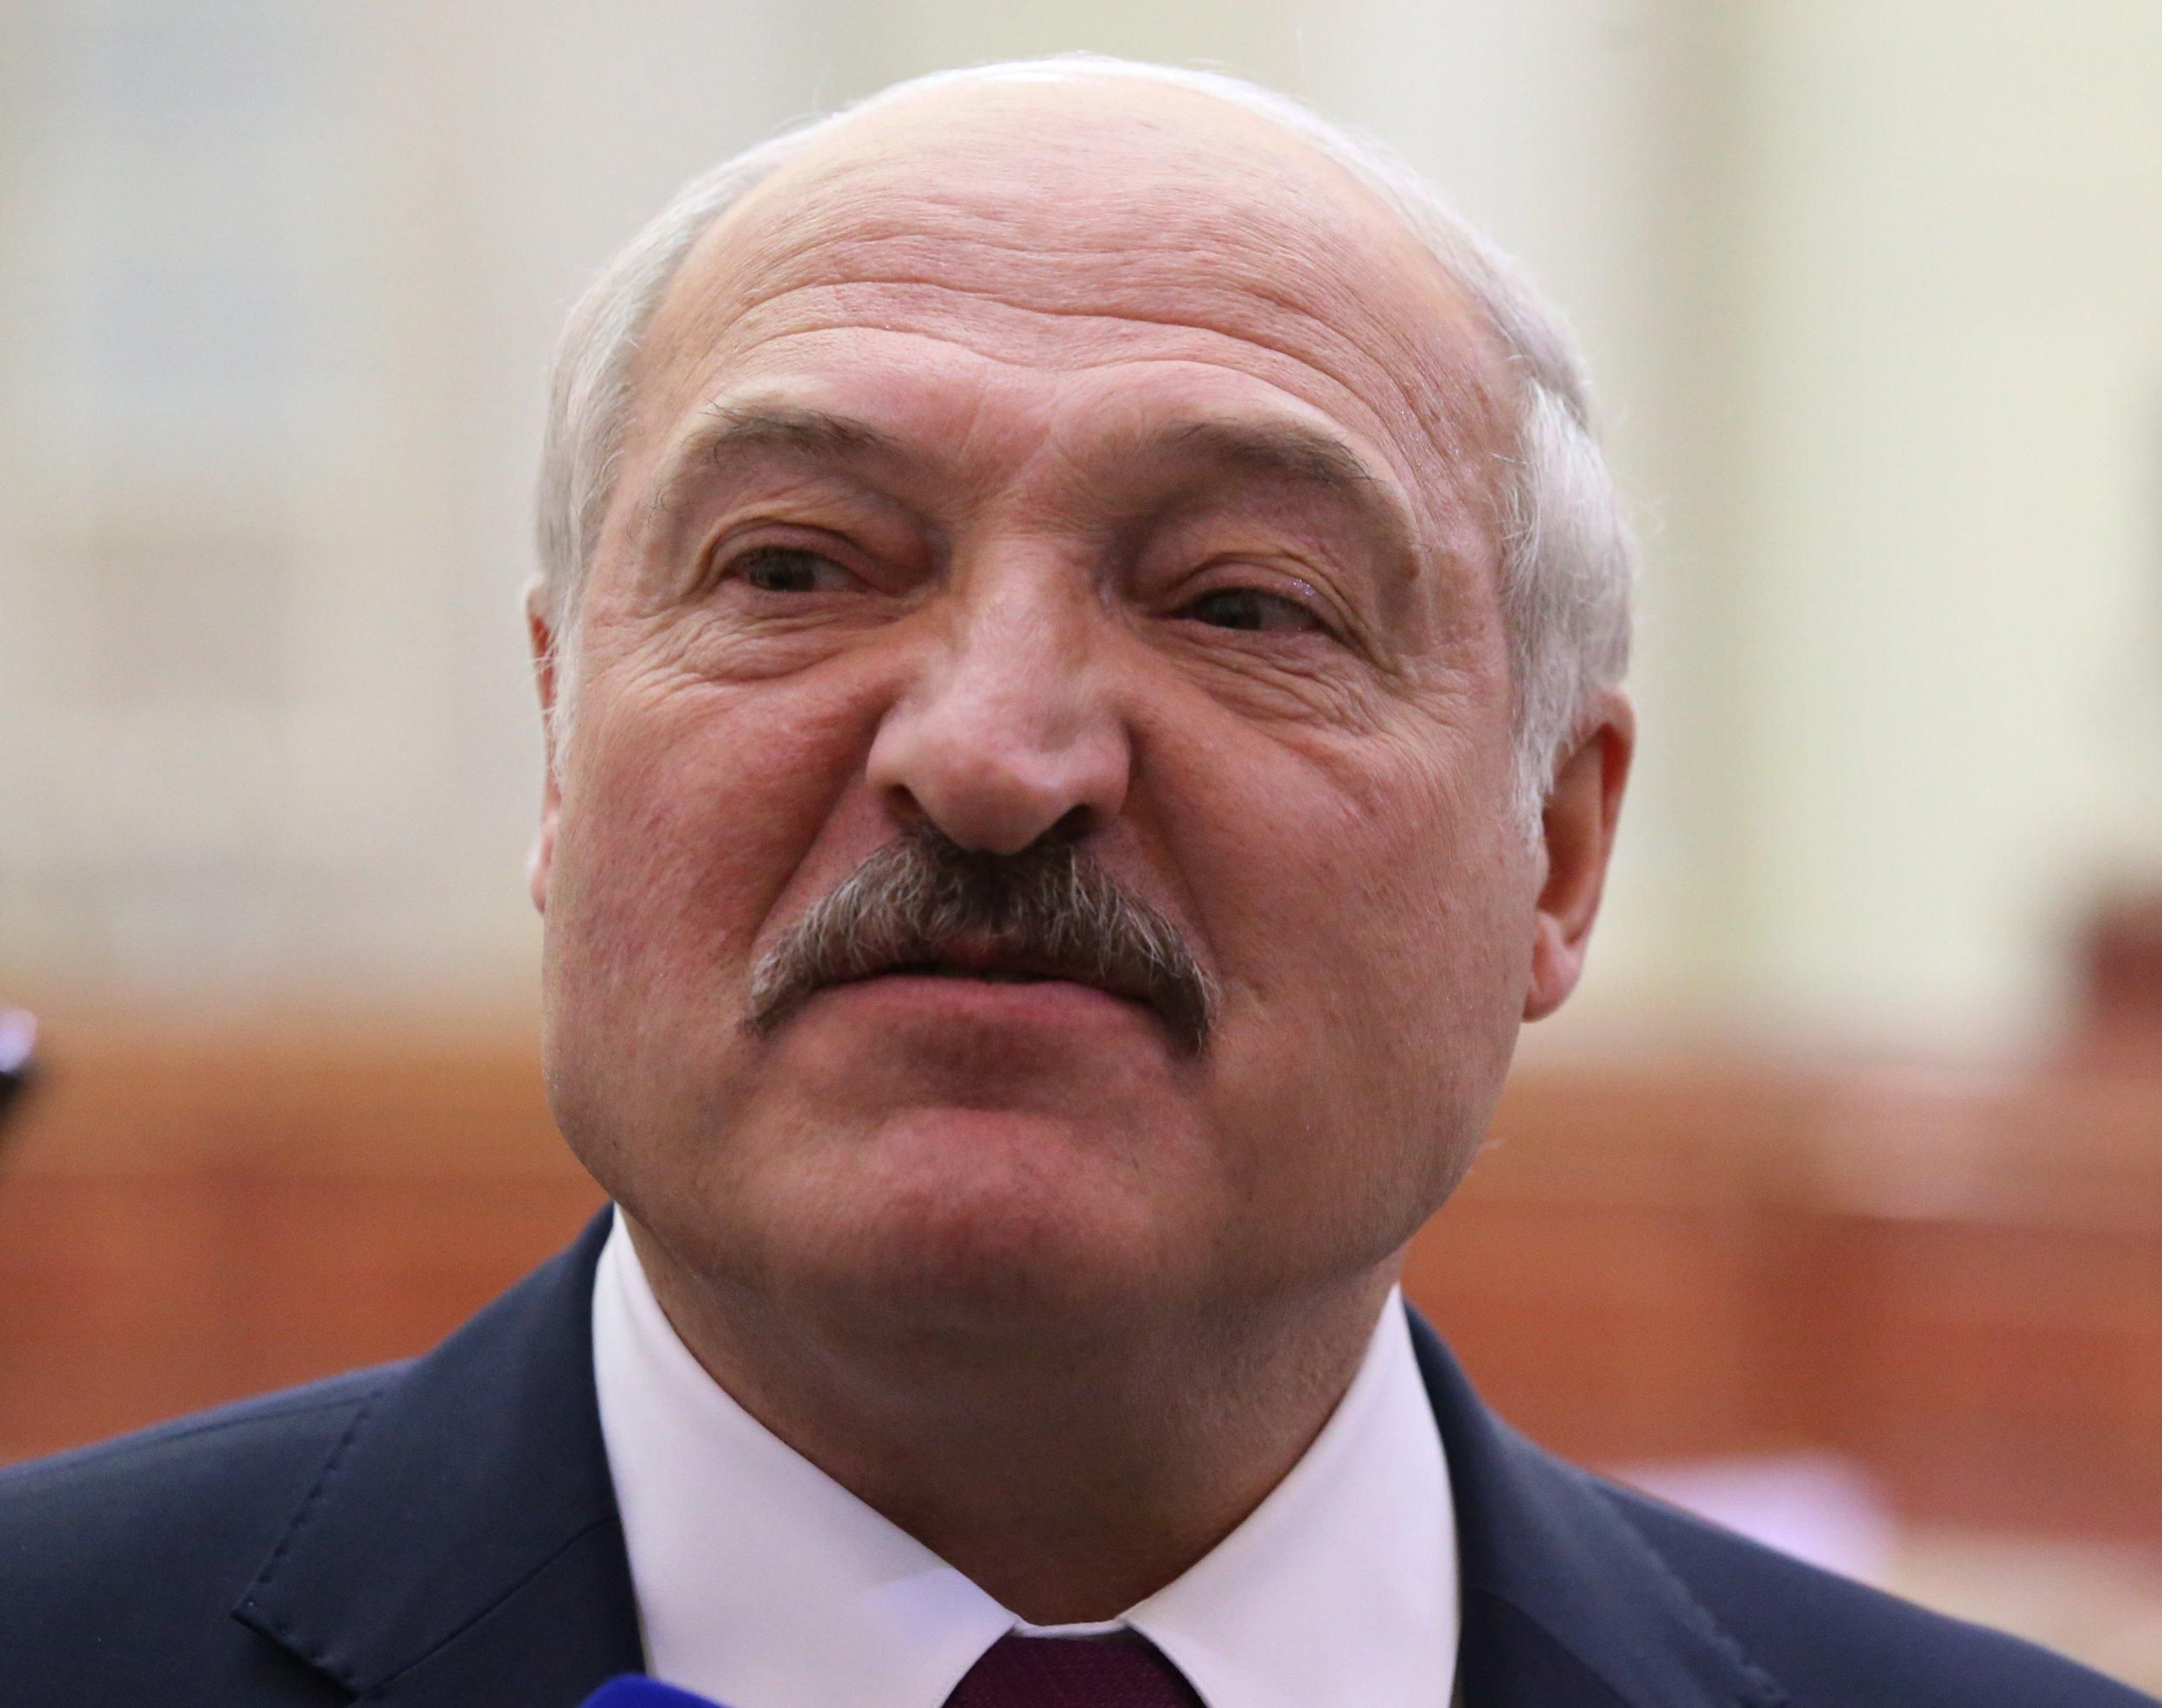 Лукашенко "продає легенду", що Україна атакувала Білорусь 23 лютого, – лідер опозиції - 11 марта 2022 - 24 Канал